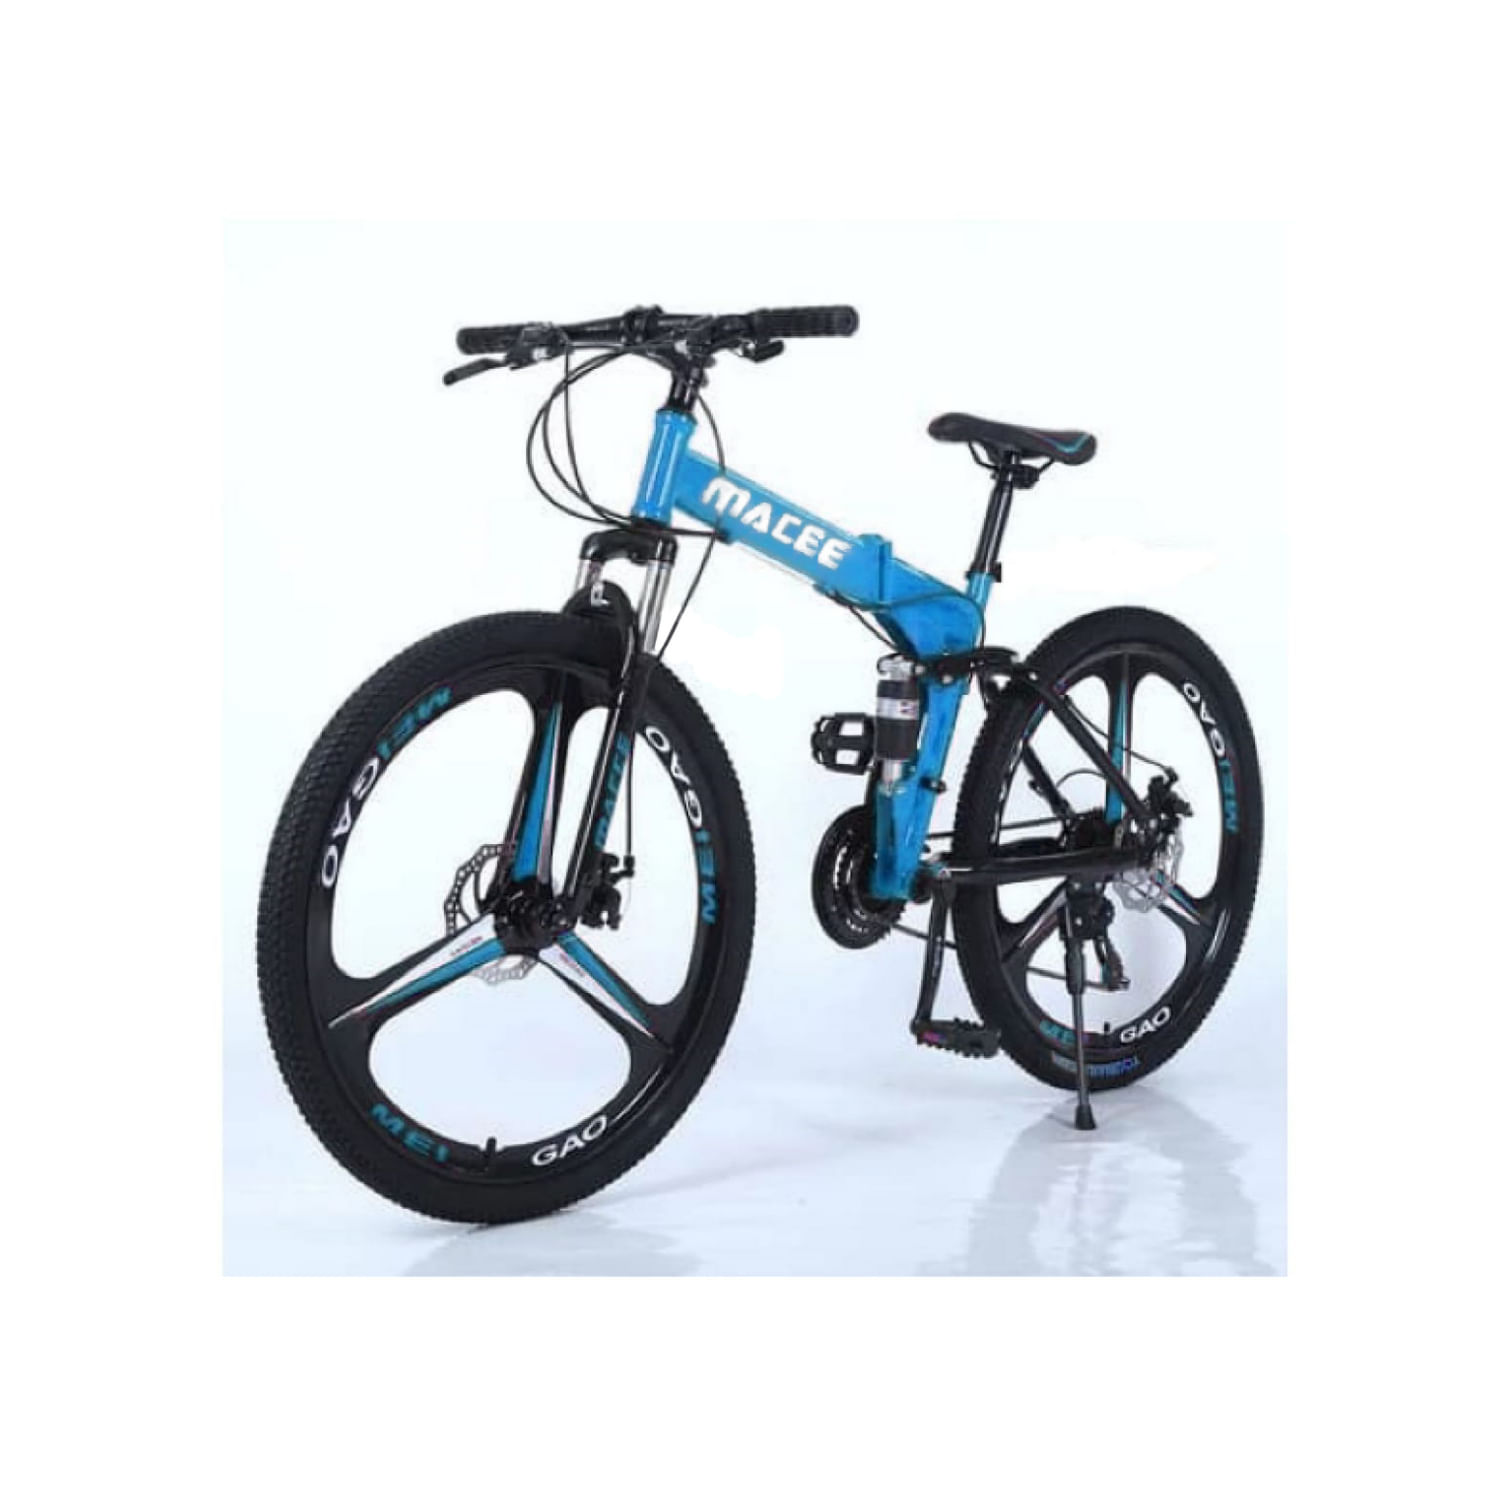 Bicicleta Montañera Plegable MACEE Aro 26 Tres Cuchillas Color Azul